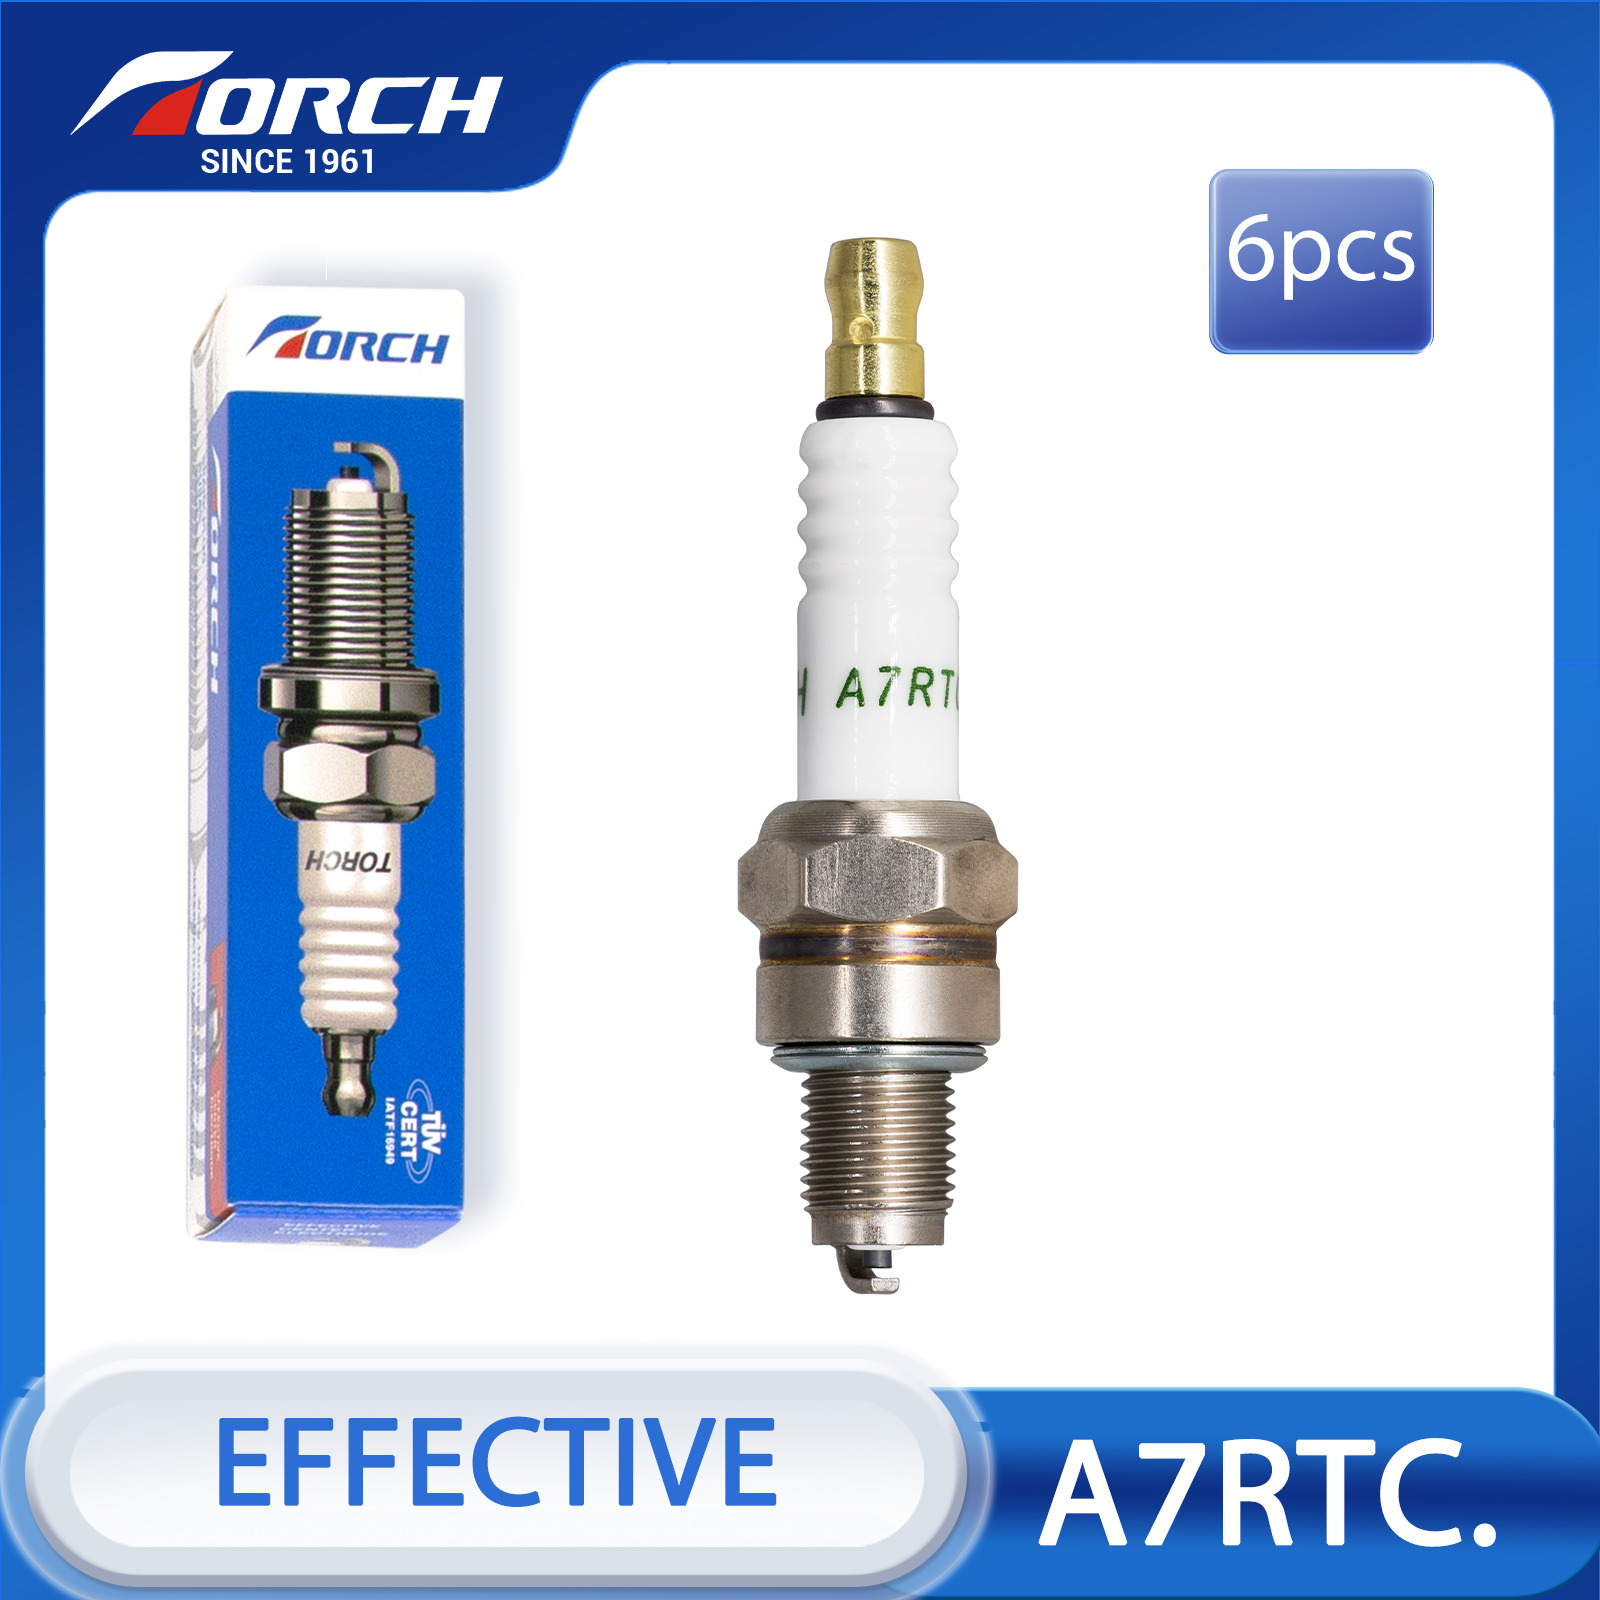 6pcs TORCH A7RTC. M10x1 Resistor Standard Spark Plug Replacement Part Automobile